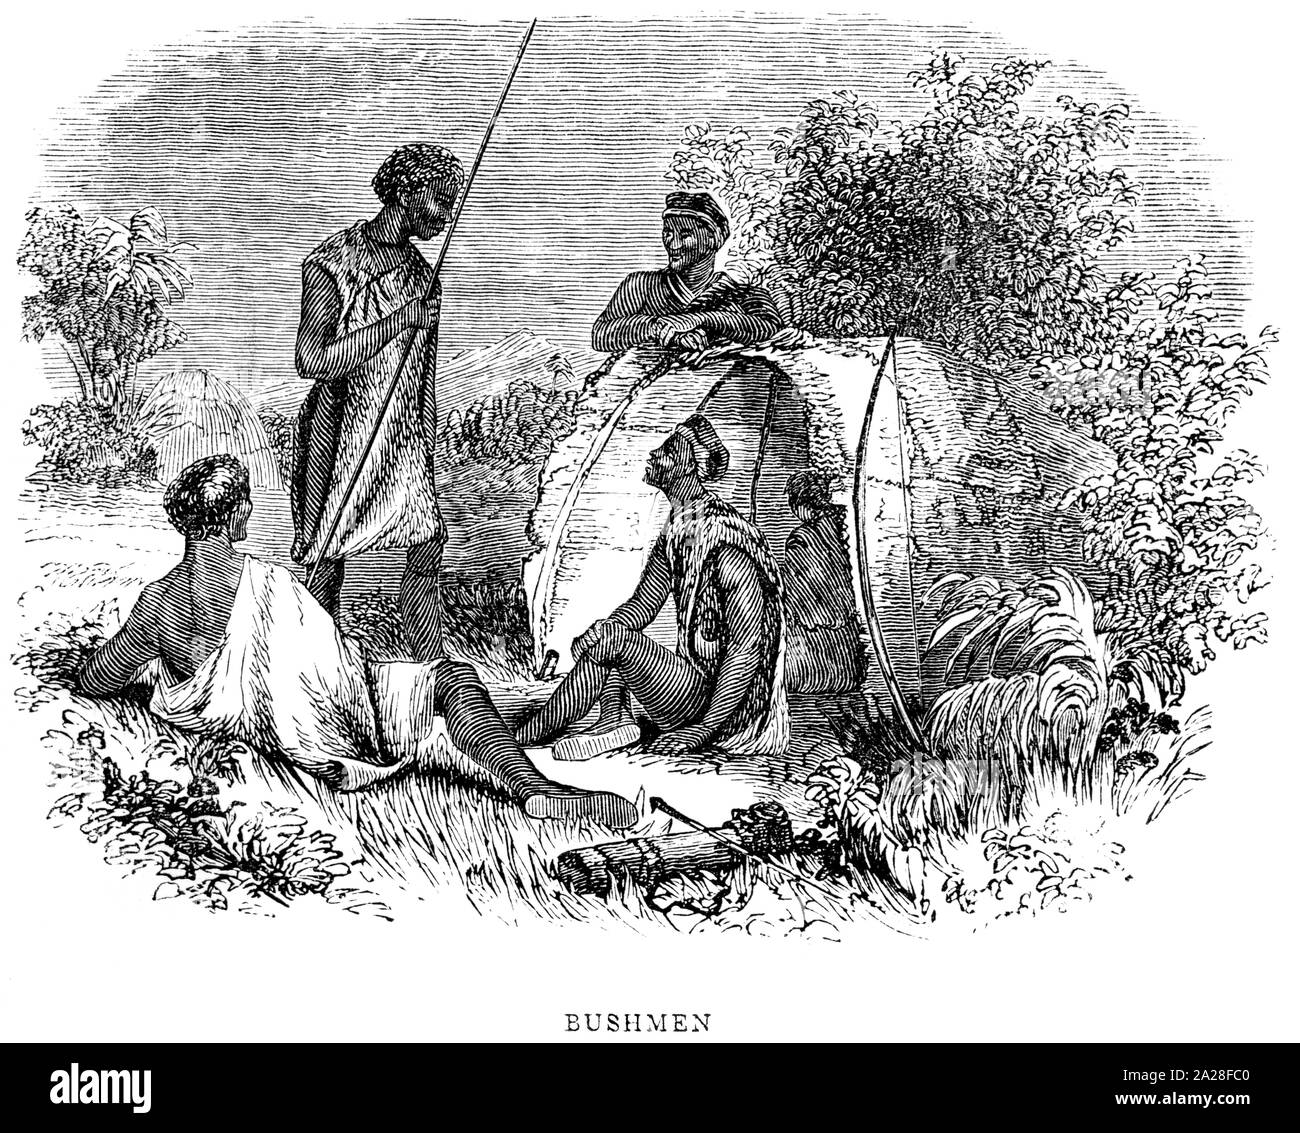 Eine Illustration Buschmänner in Südafrika gescannt und in hoher Auflösung aus einem Buch von Robert Moffat im Jahre 1842 gedruckt. Glaubten copyright frei. Stockfoto